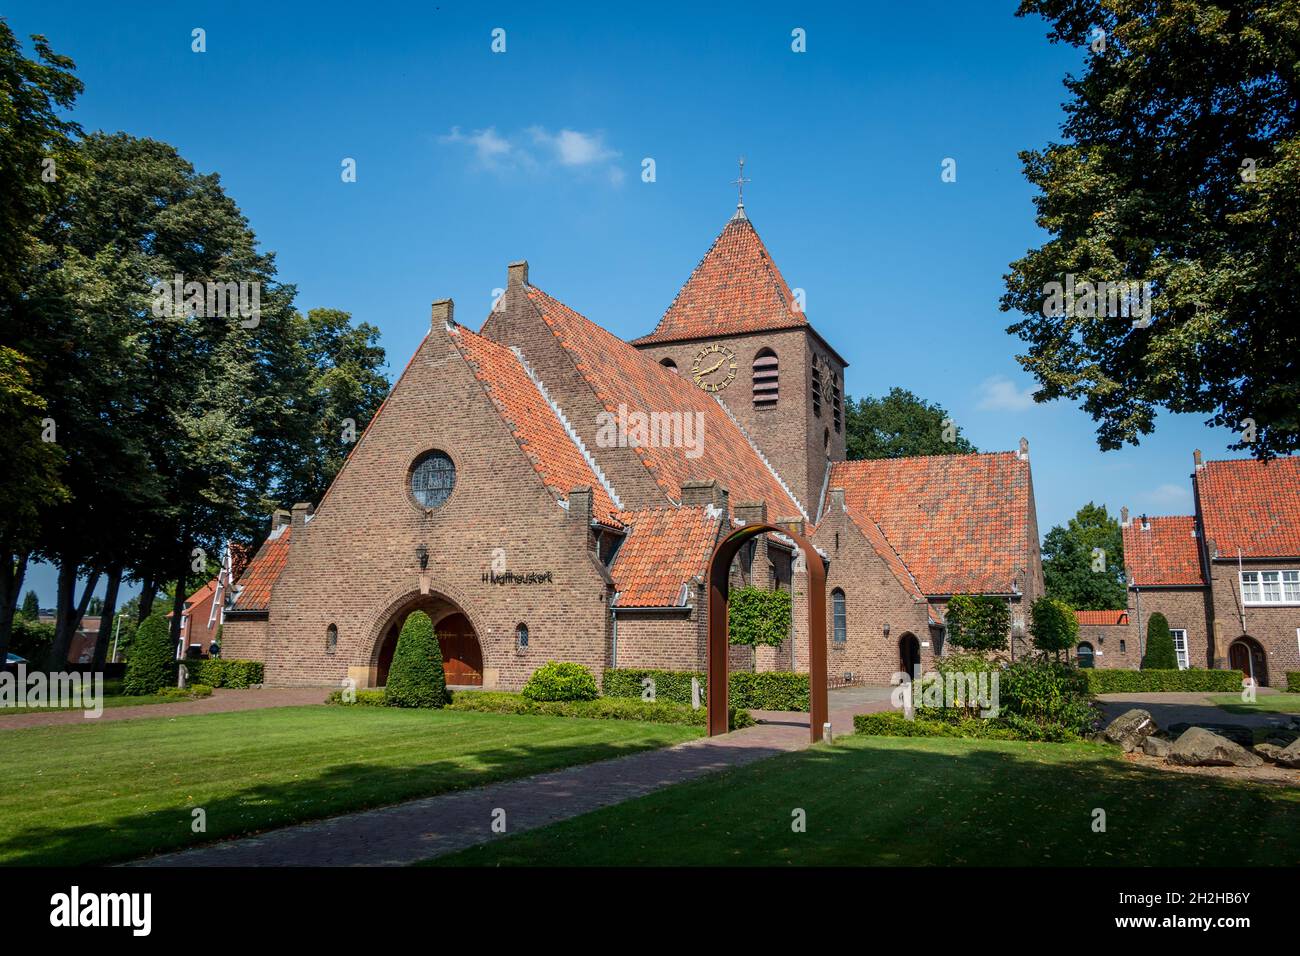 The new Roman Catholic Mattheus church in the village called Eibergen, in the province of Gelderland, region 'Achterhoek', the Netherlands Stock Photo